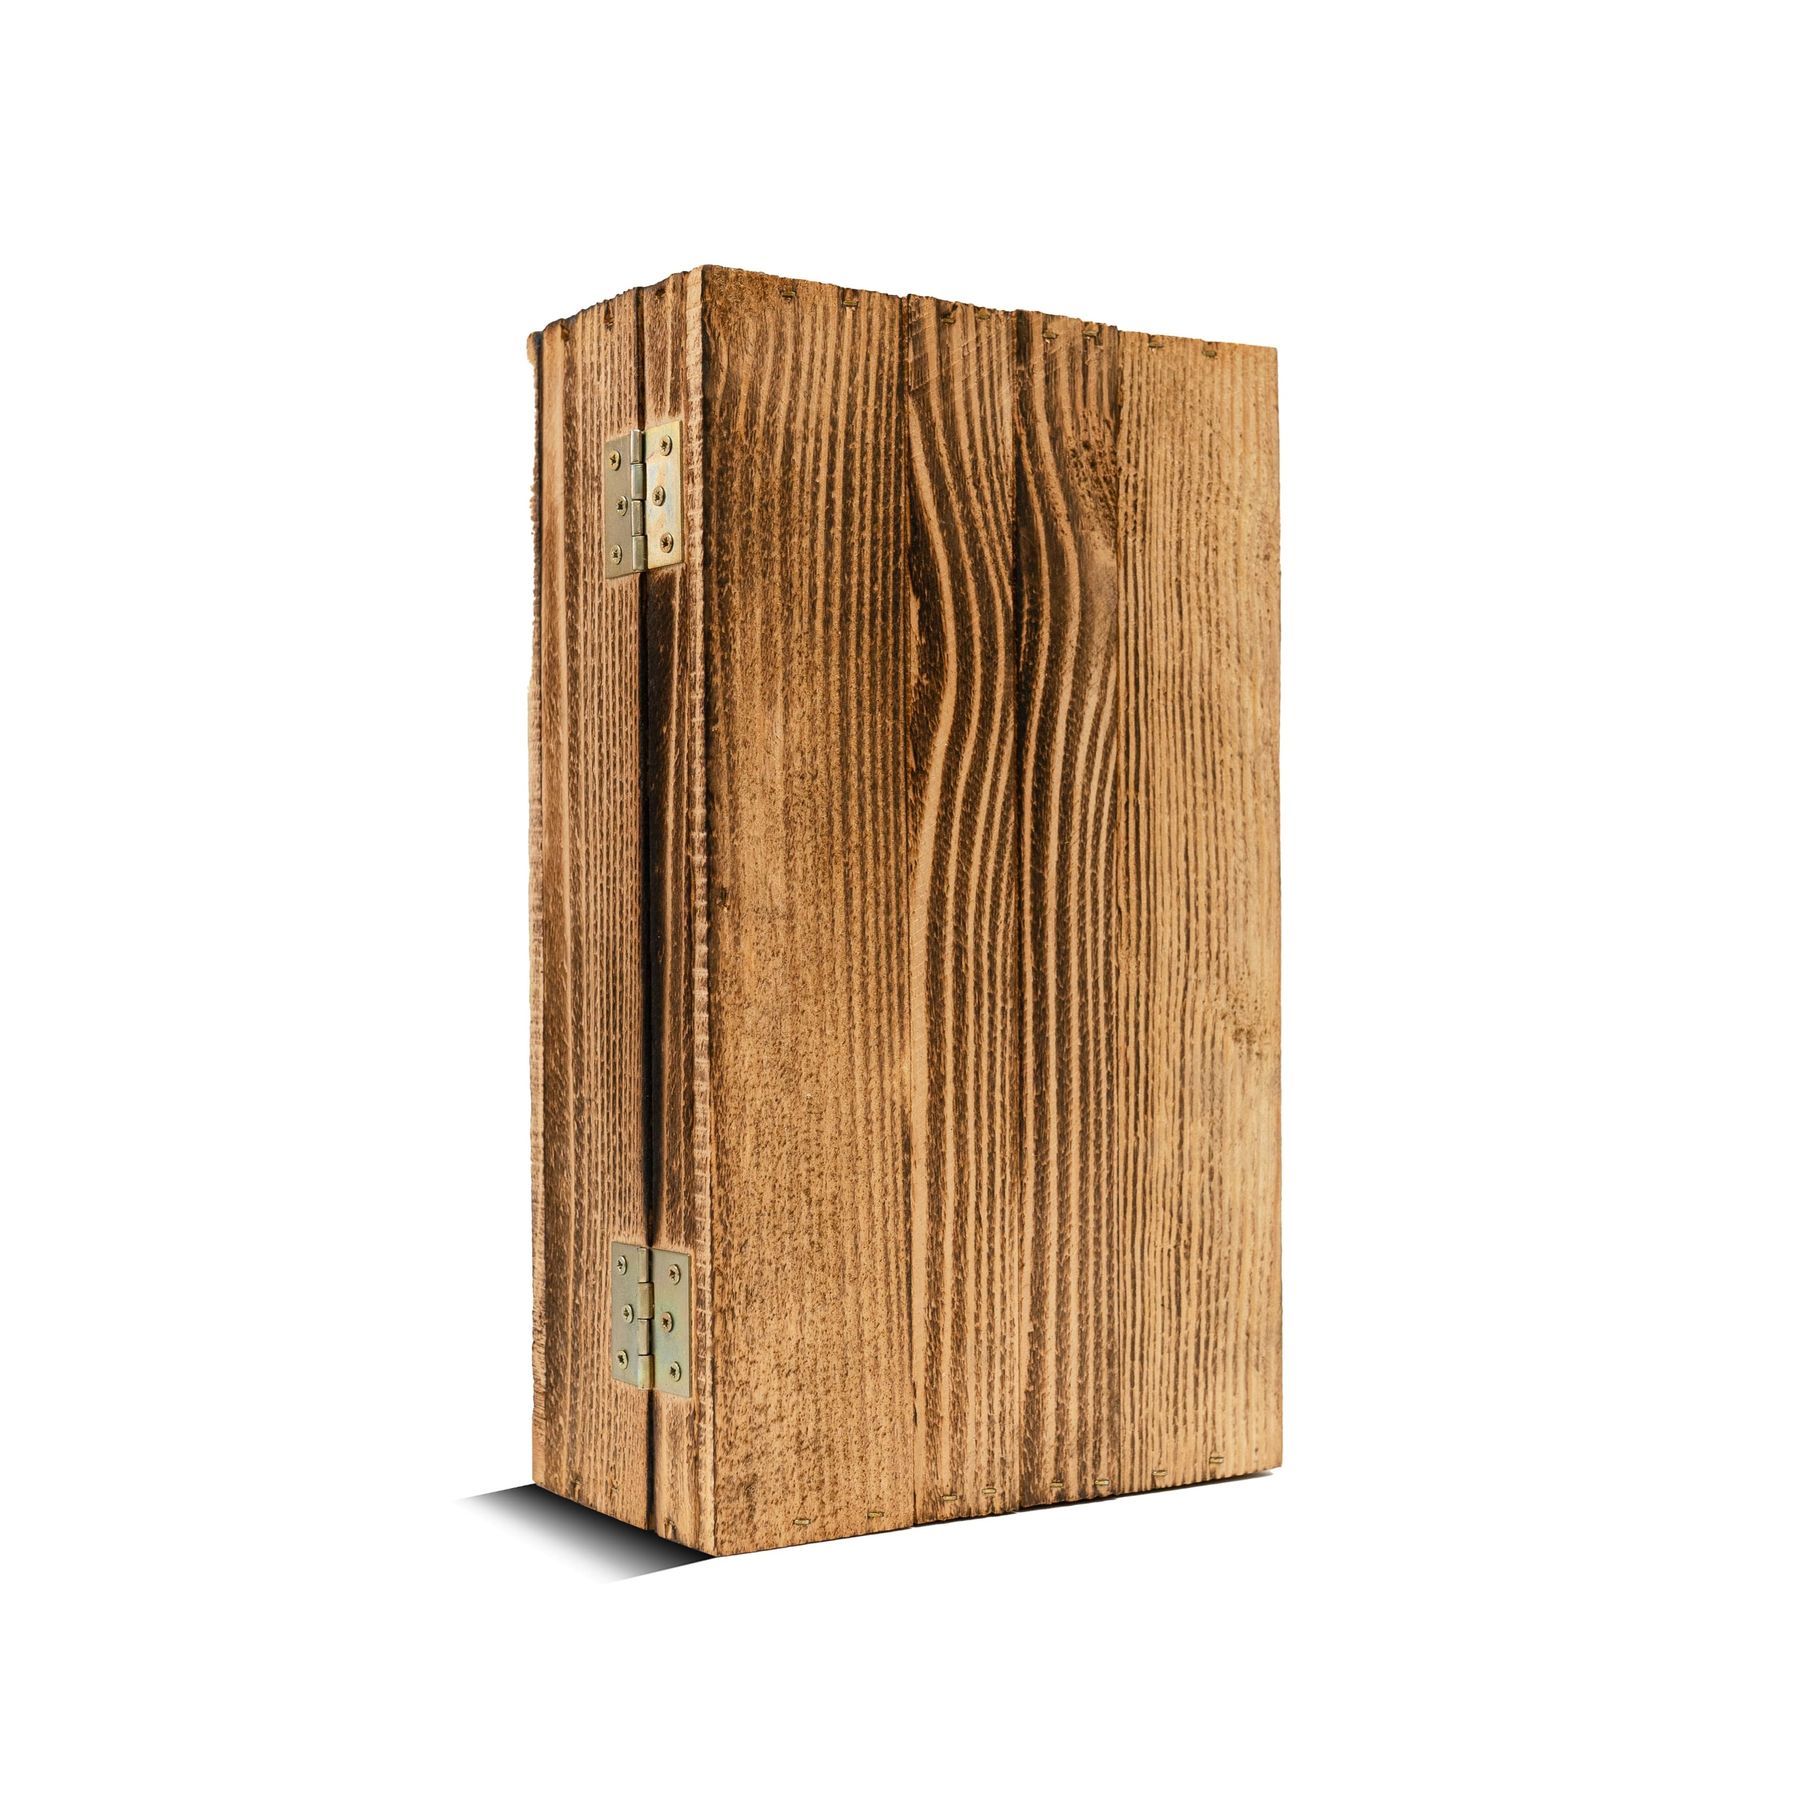 Дерев'яна коробка для подарунка "дерев'яний ящик" - 35-21-10